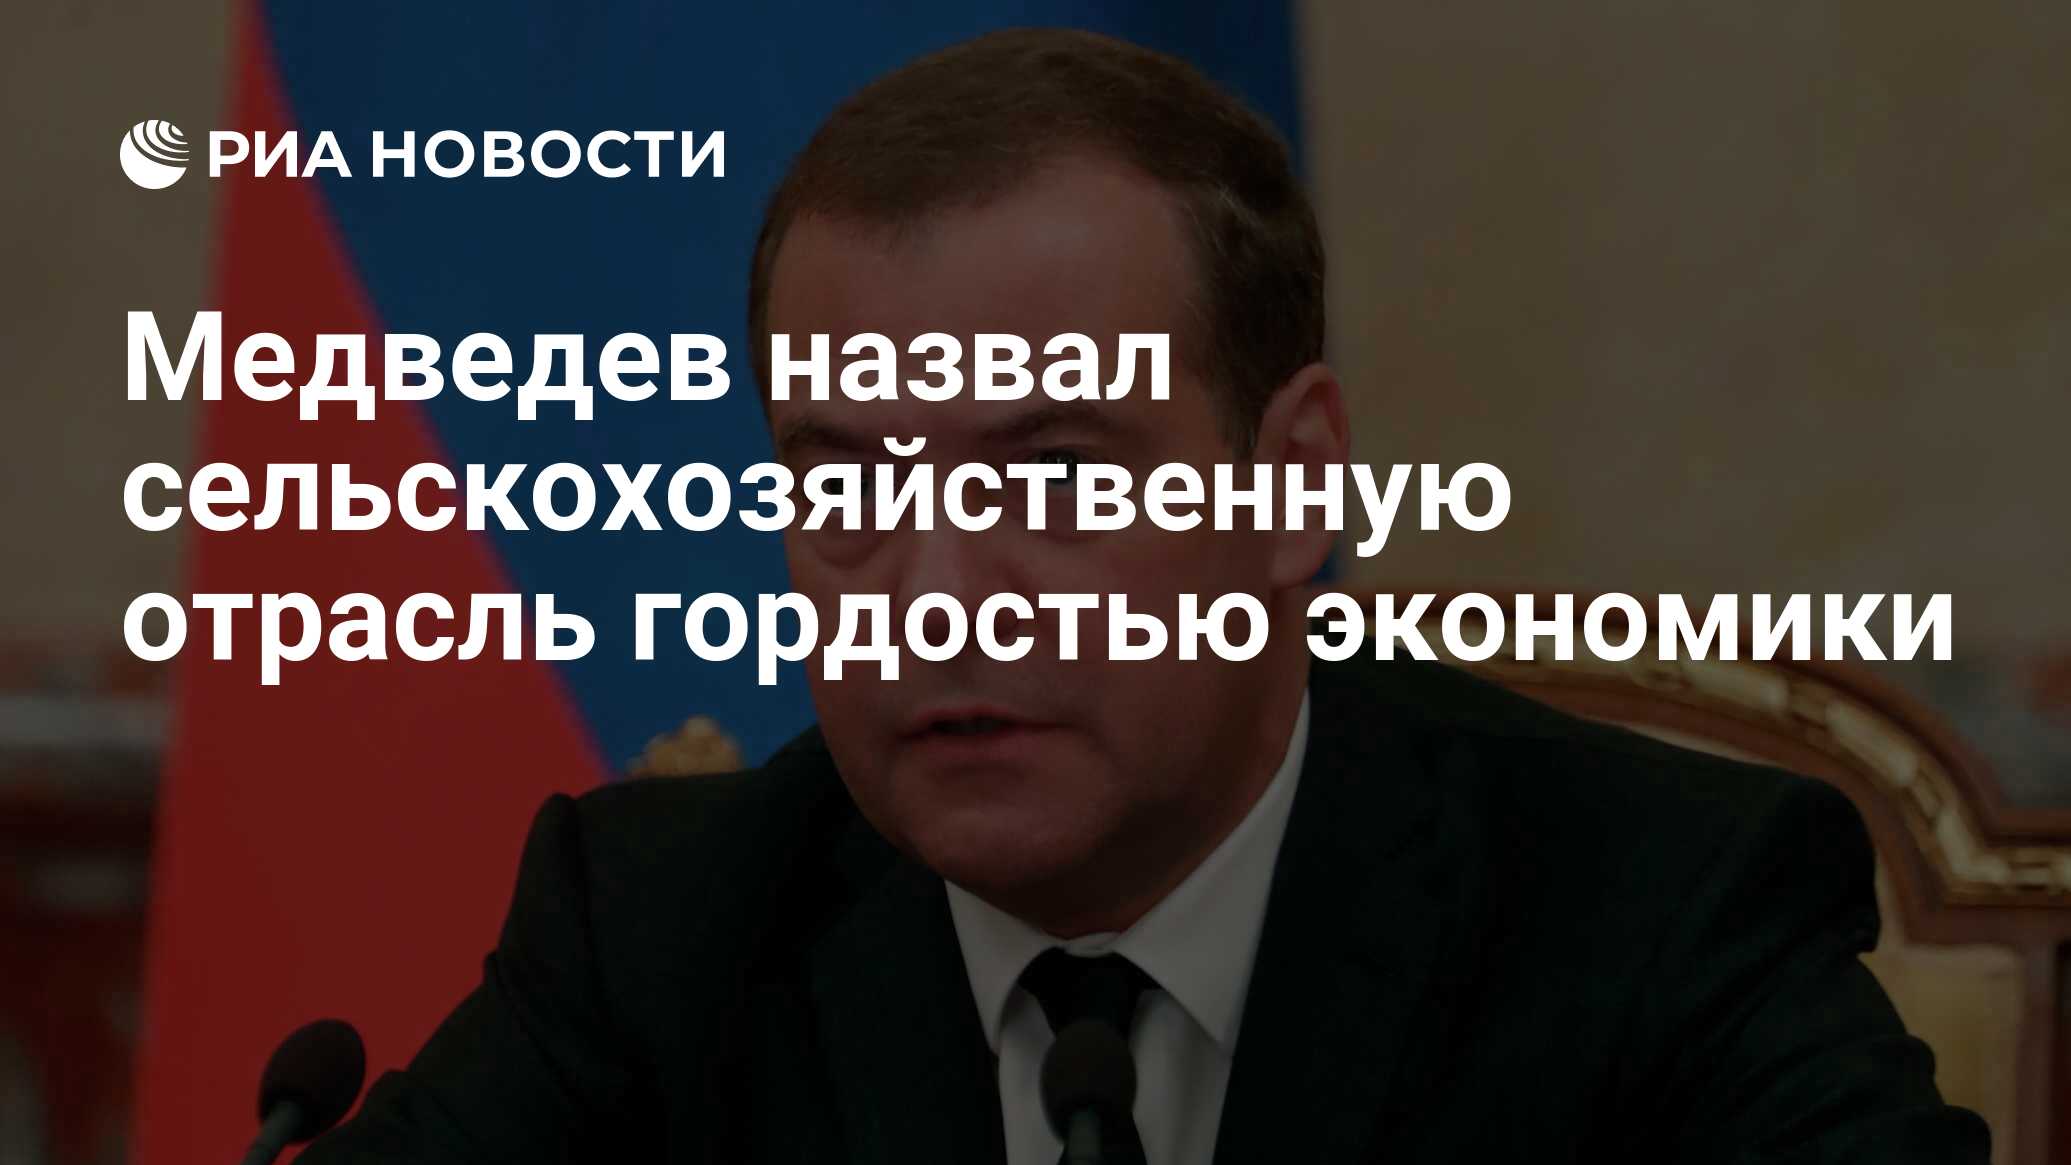 Медведев маленький. Медведев призвал сдерживать рост тарифов на события ТВЦ. Гордость экономики